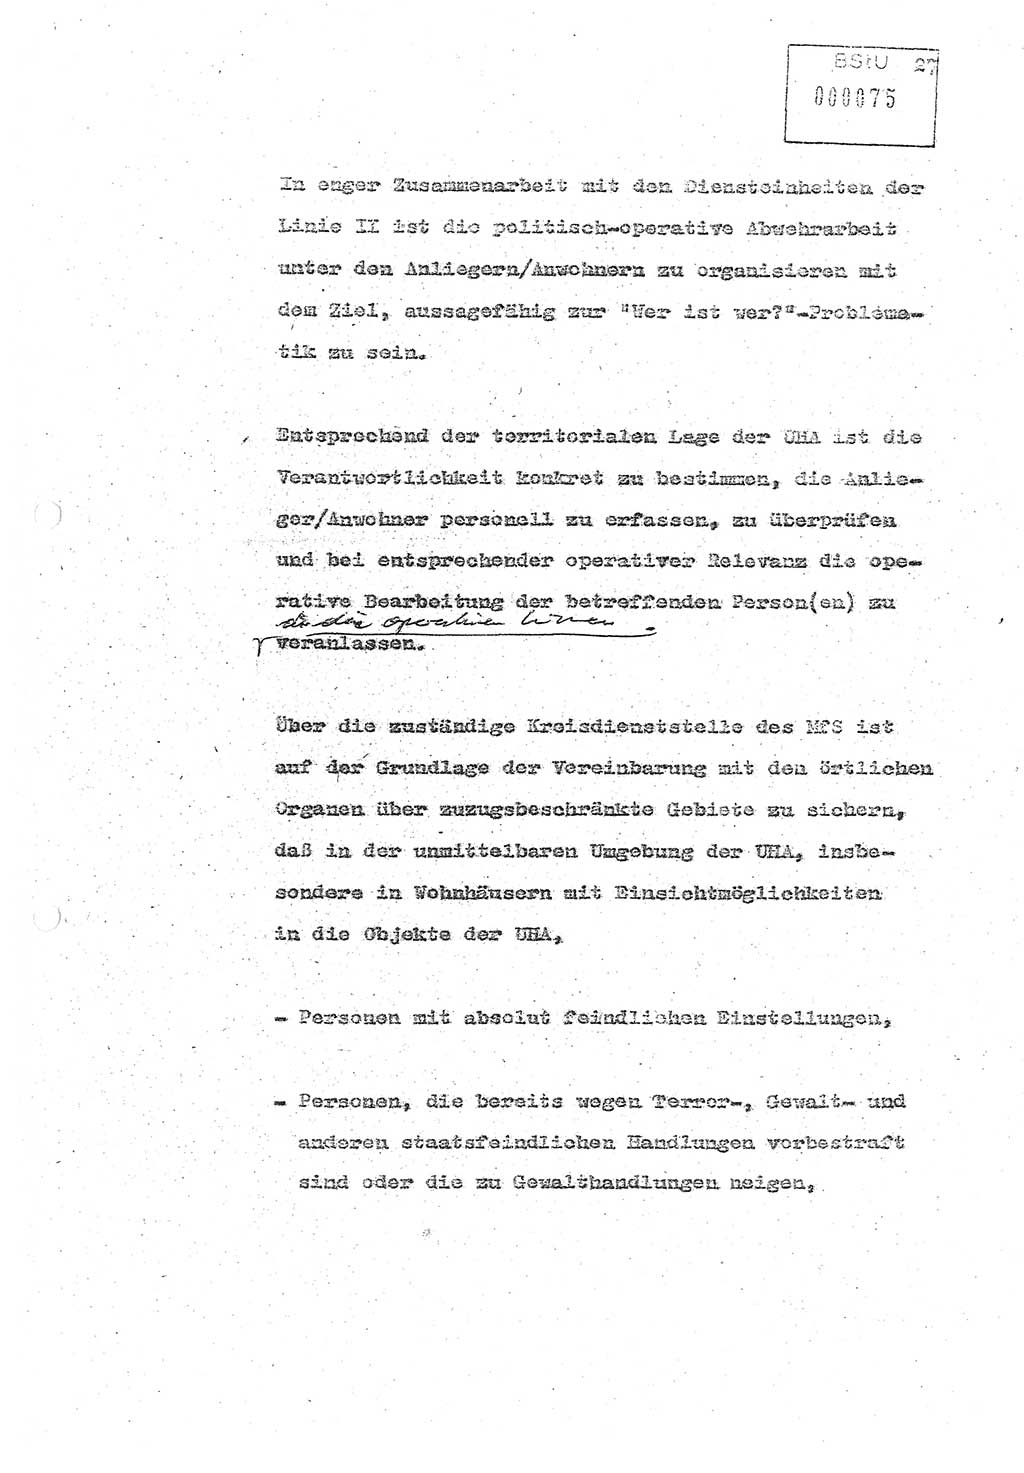 Referat (Oberst Siegfried Rataizick) zur Dienstkonferenz der Abteilung ⅩⅣ des MfS Berlin [Ministerium für Staatssicherheit, Deutsche Demokratische Republik (DDR)] Berlin-Hohenschönhausen vom 5.3.1986 bis 6.3.1986, Abteilung XIV, Berlin, 20.2.1986, Seite 27 (Ref. Di.-Konf. Abt. ⅩⅣ MfS DDR Bln. 1986, S. 27)